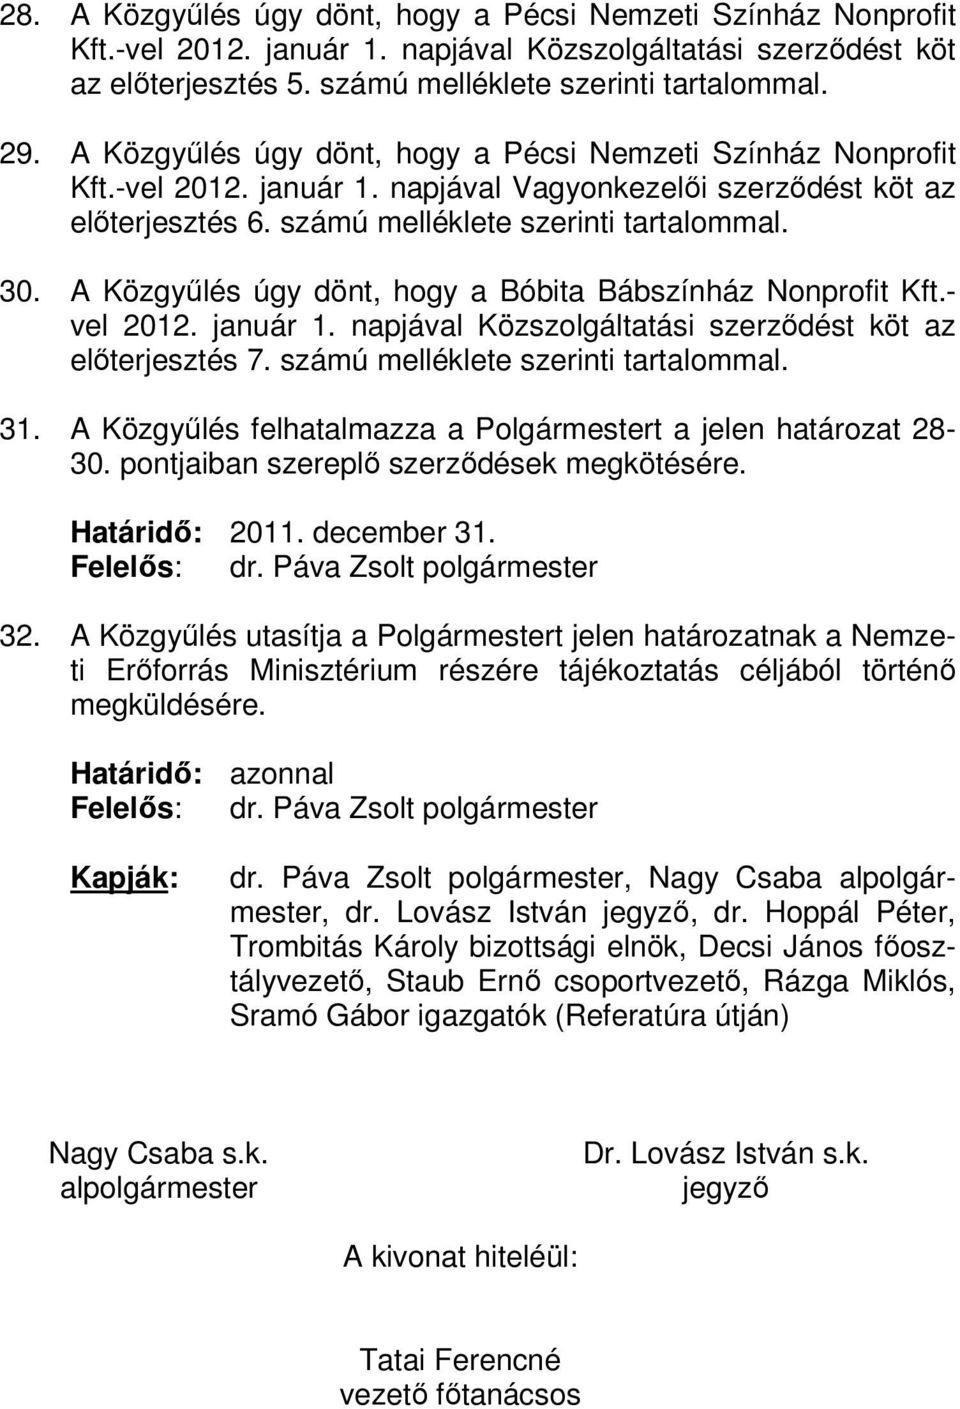 A Közgyűlés úgy dönt, hogy a Bóbita Bábszínház Nonprofit Kft.- vel 2012. január 1. napjával Közszolgáltatási szerződést köt az előterjesztés 7. számú melléklete szerinti tartalommal. 31.